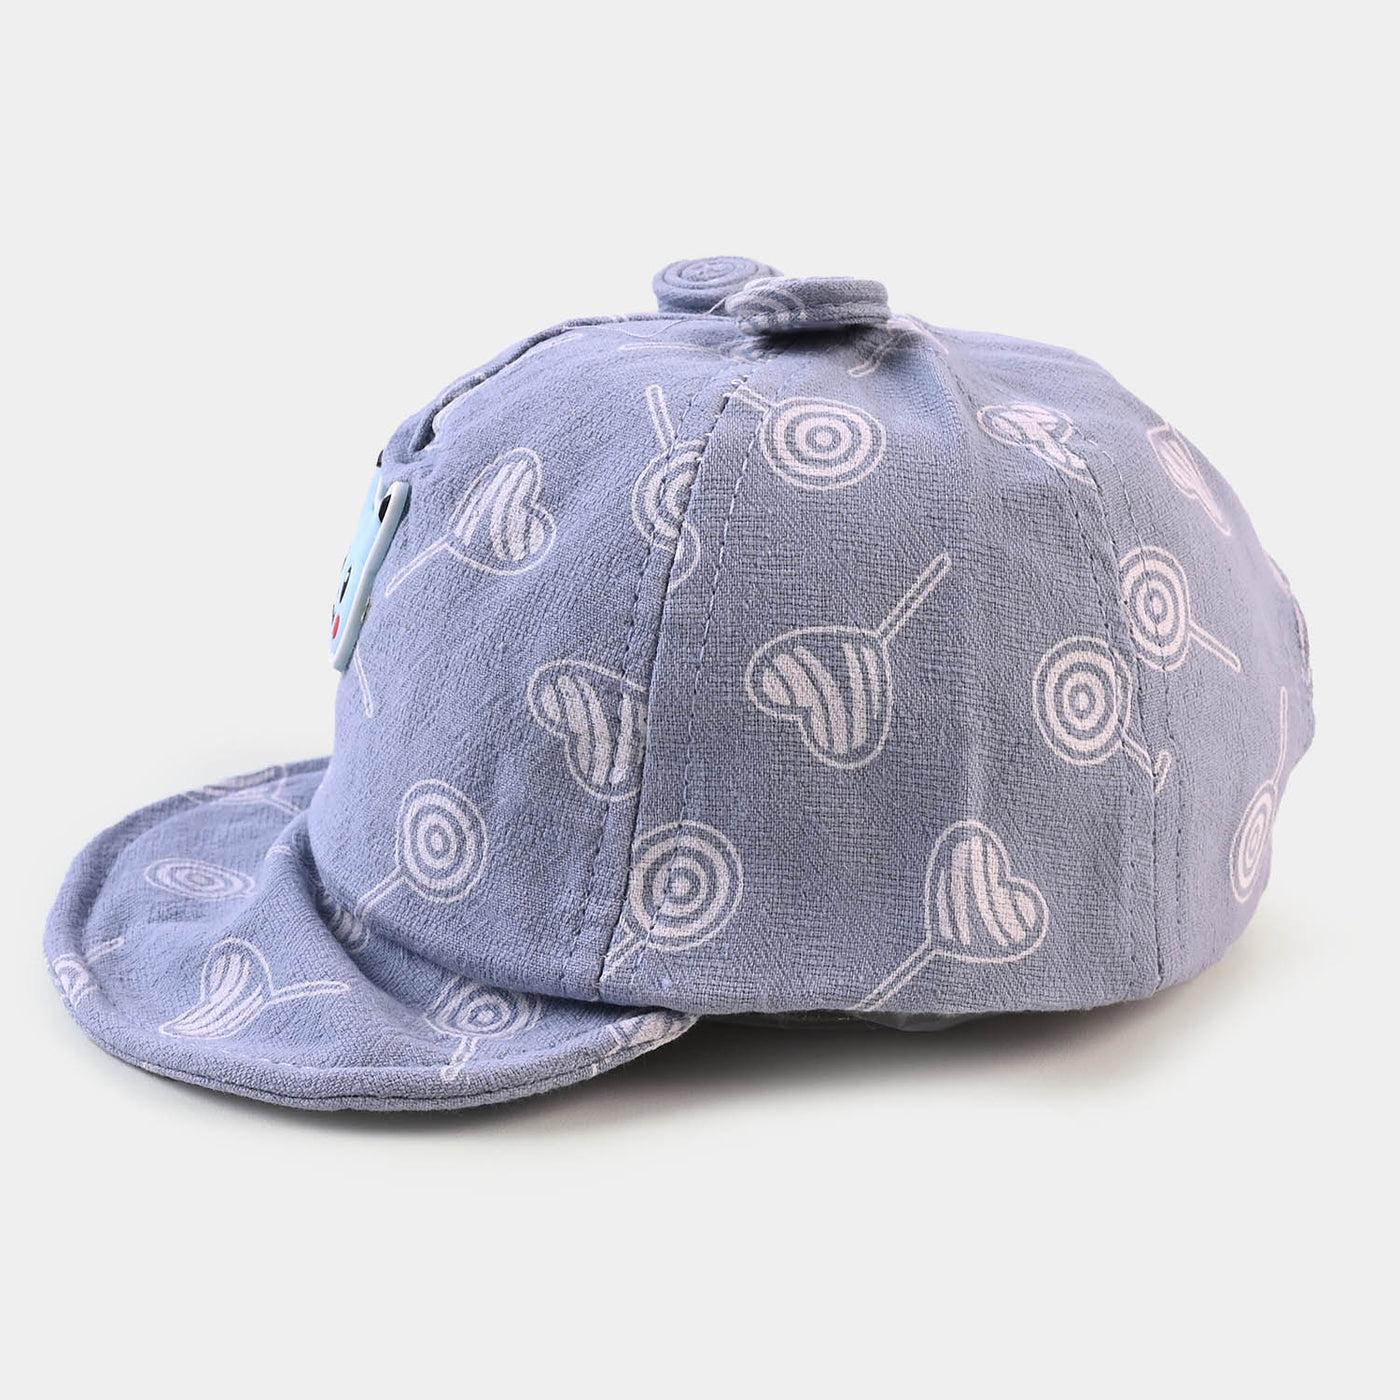 BABY ROUND CAP/HAT 6 MONTH +   BLUE